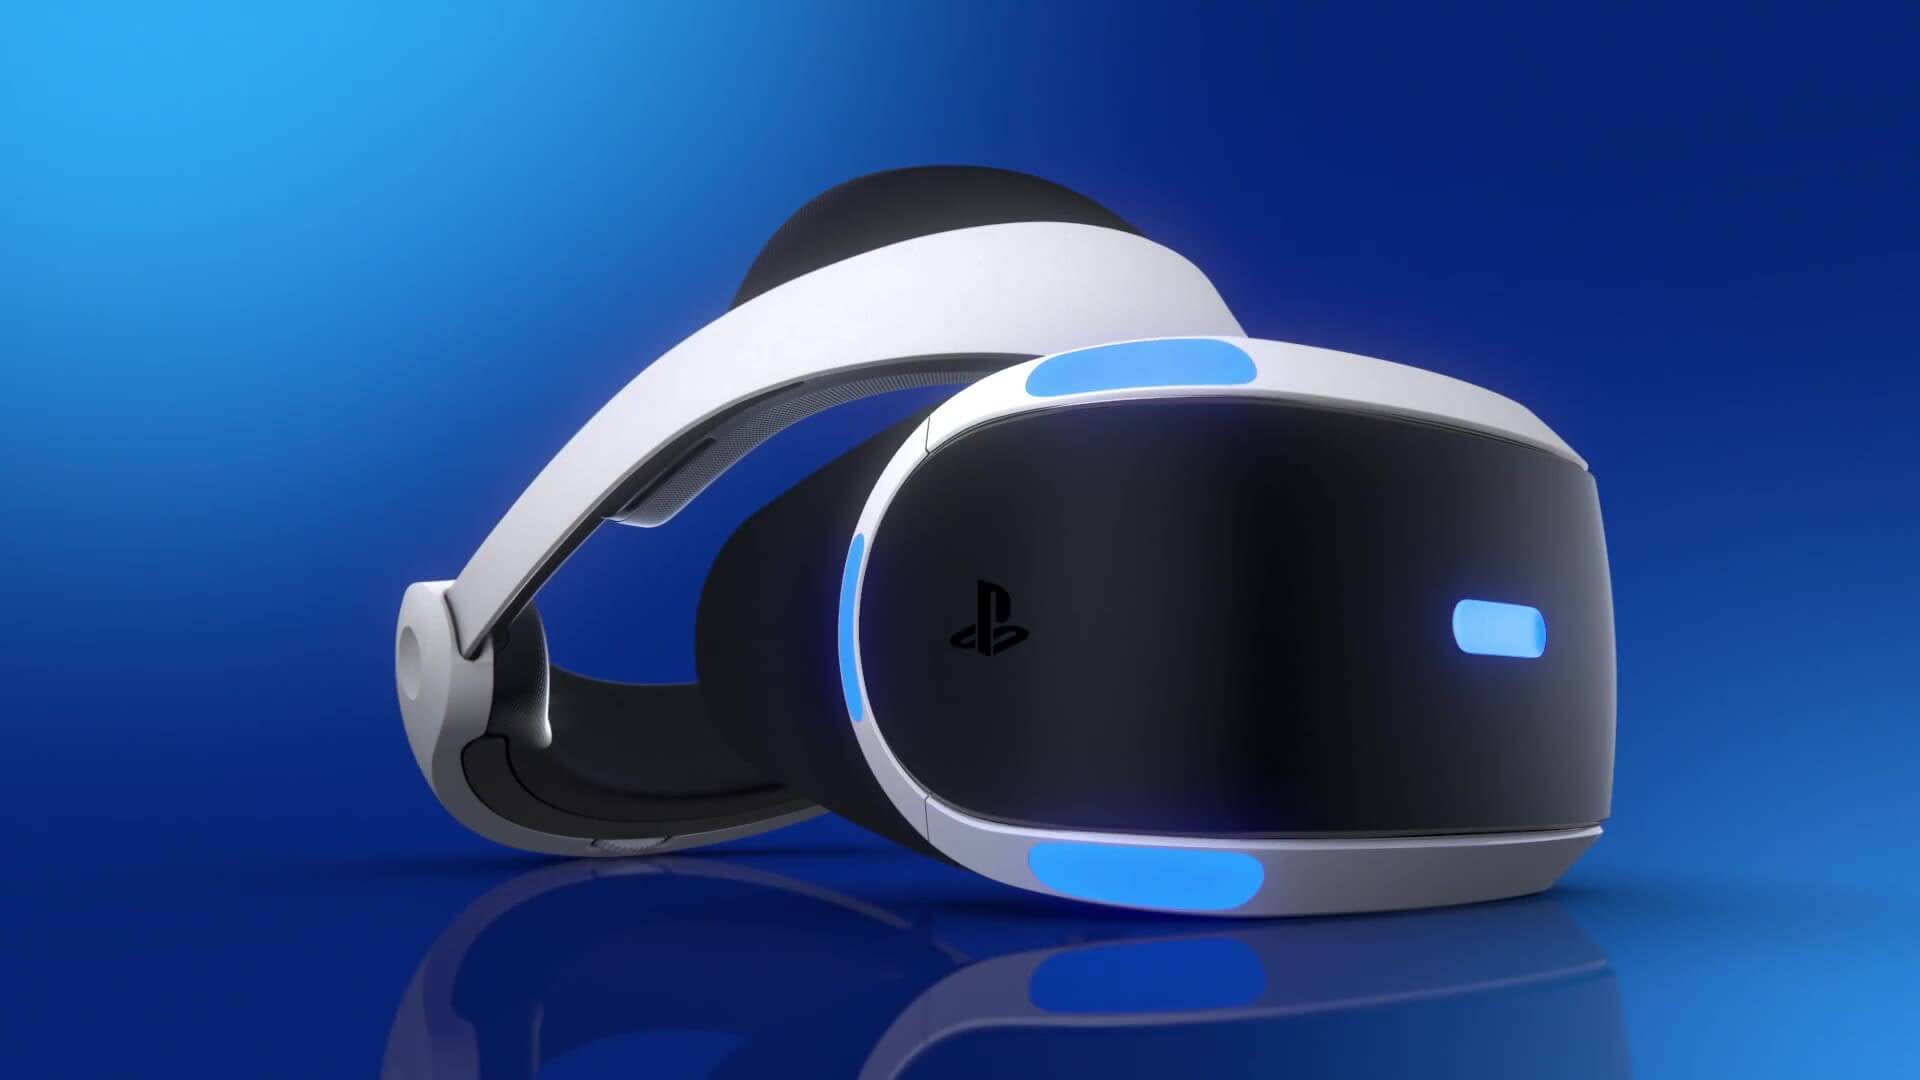 Playstation VR Brillenträger – PS VR auch mit Brille möglich?